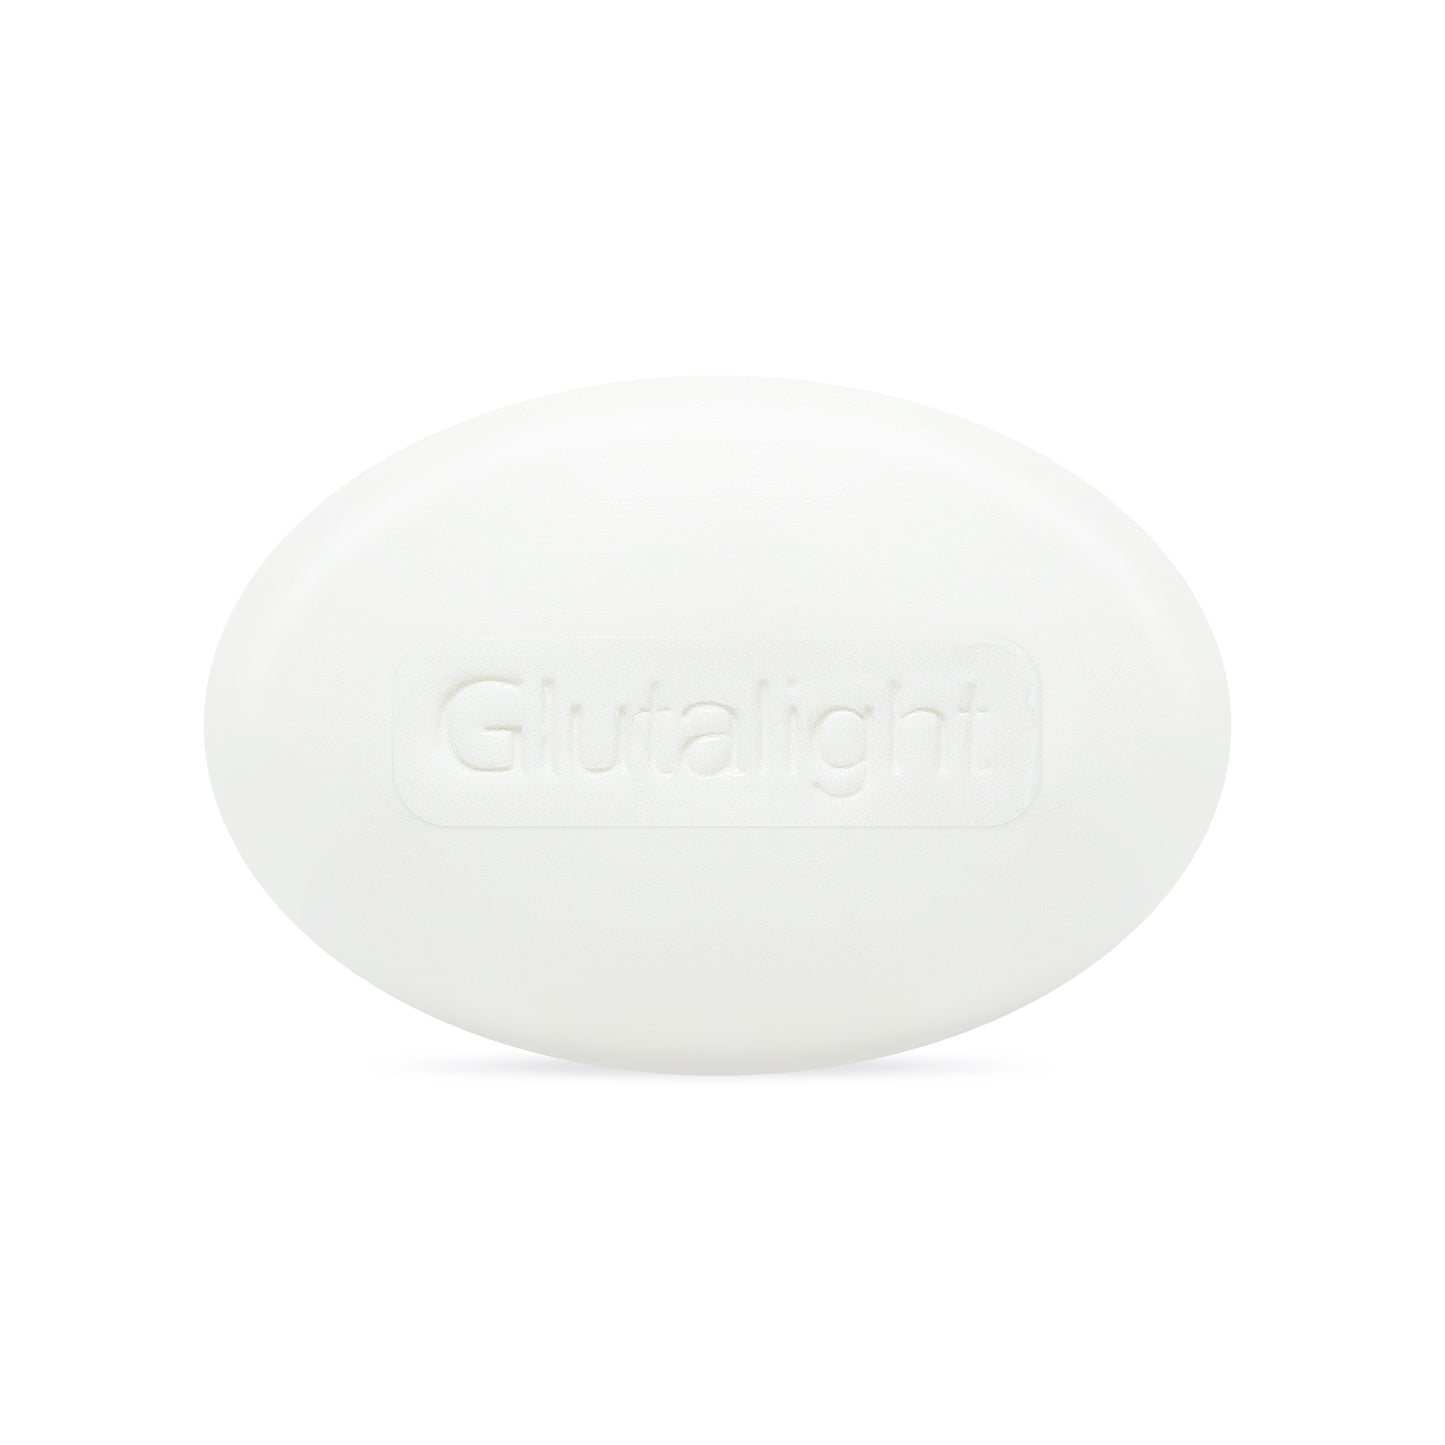 Glutalight Whitening Soap 100 g